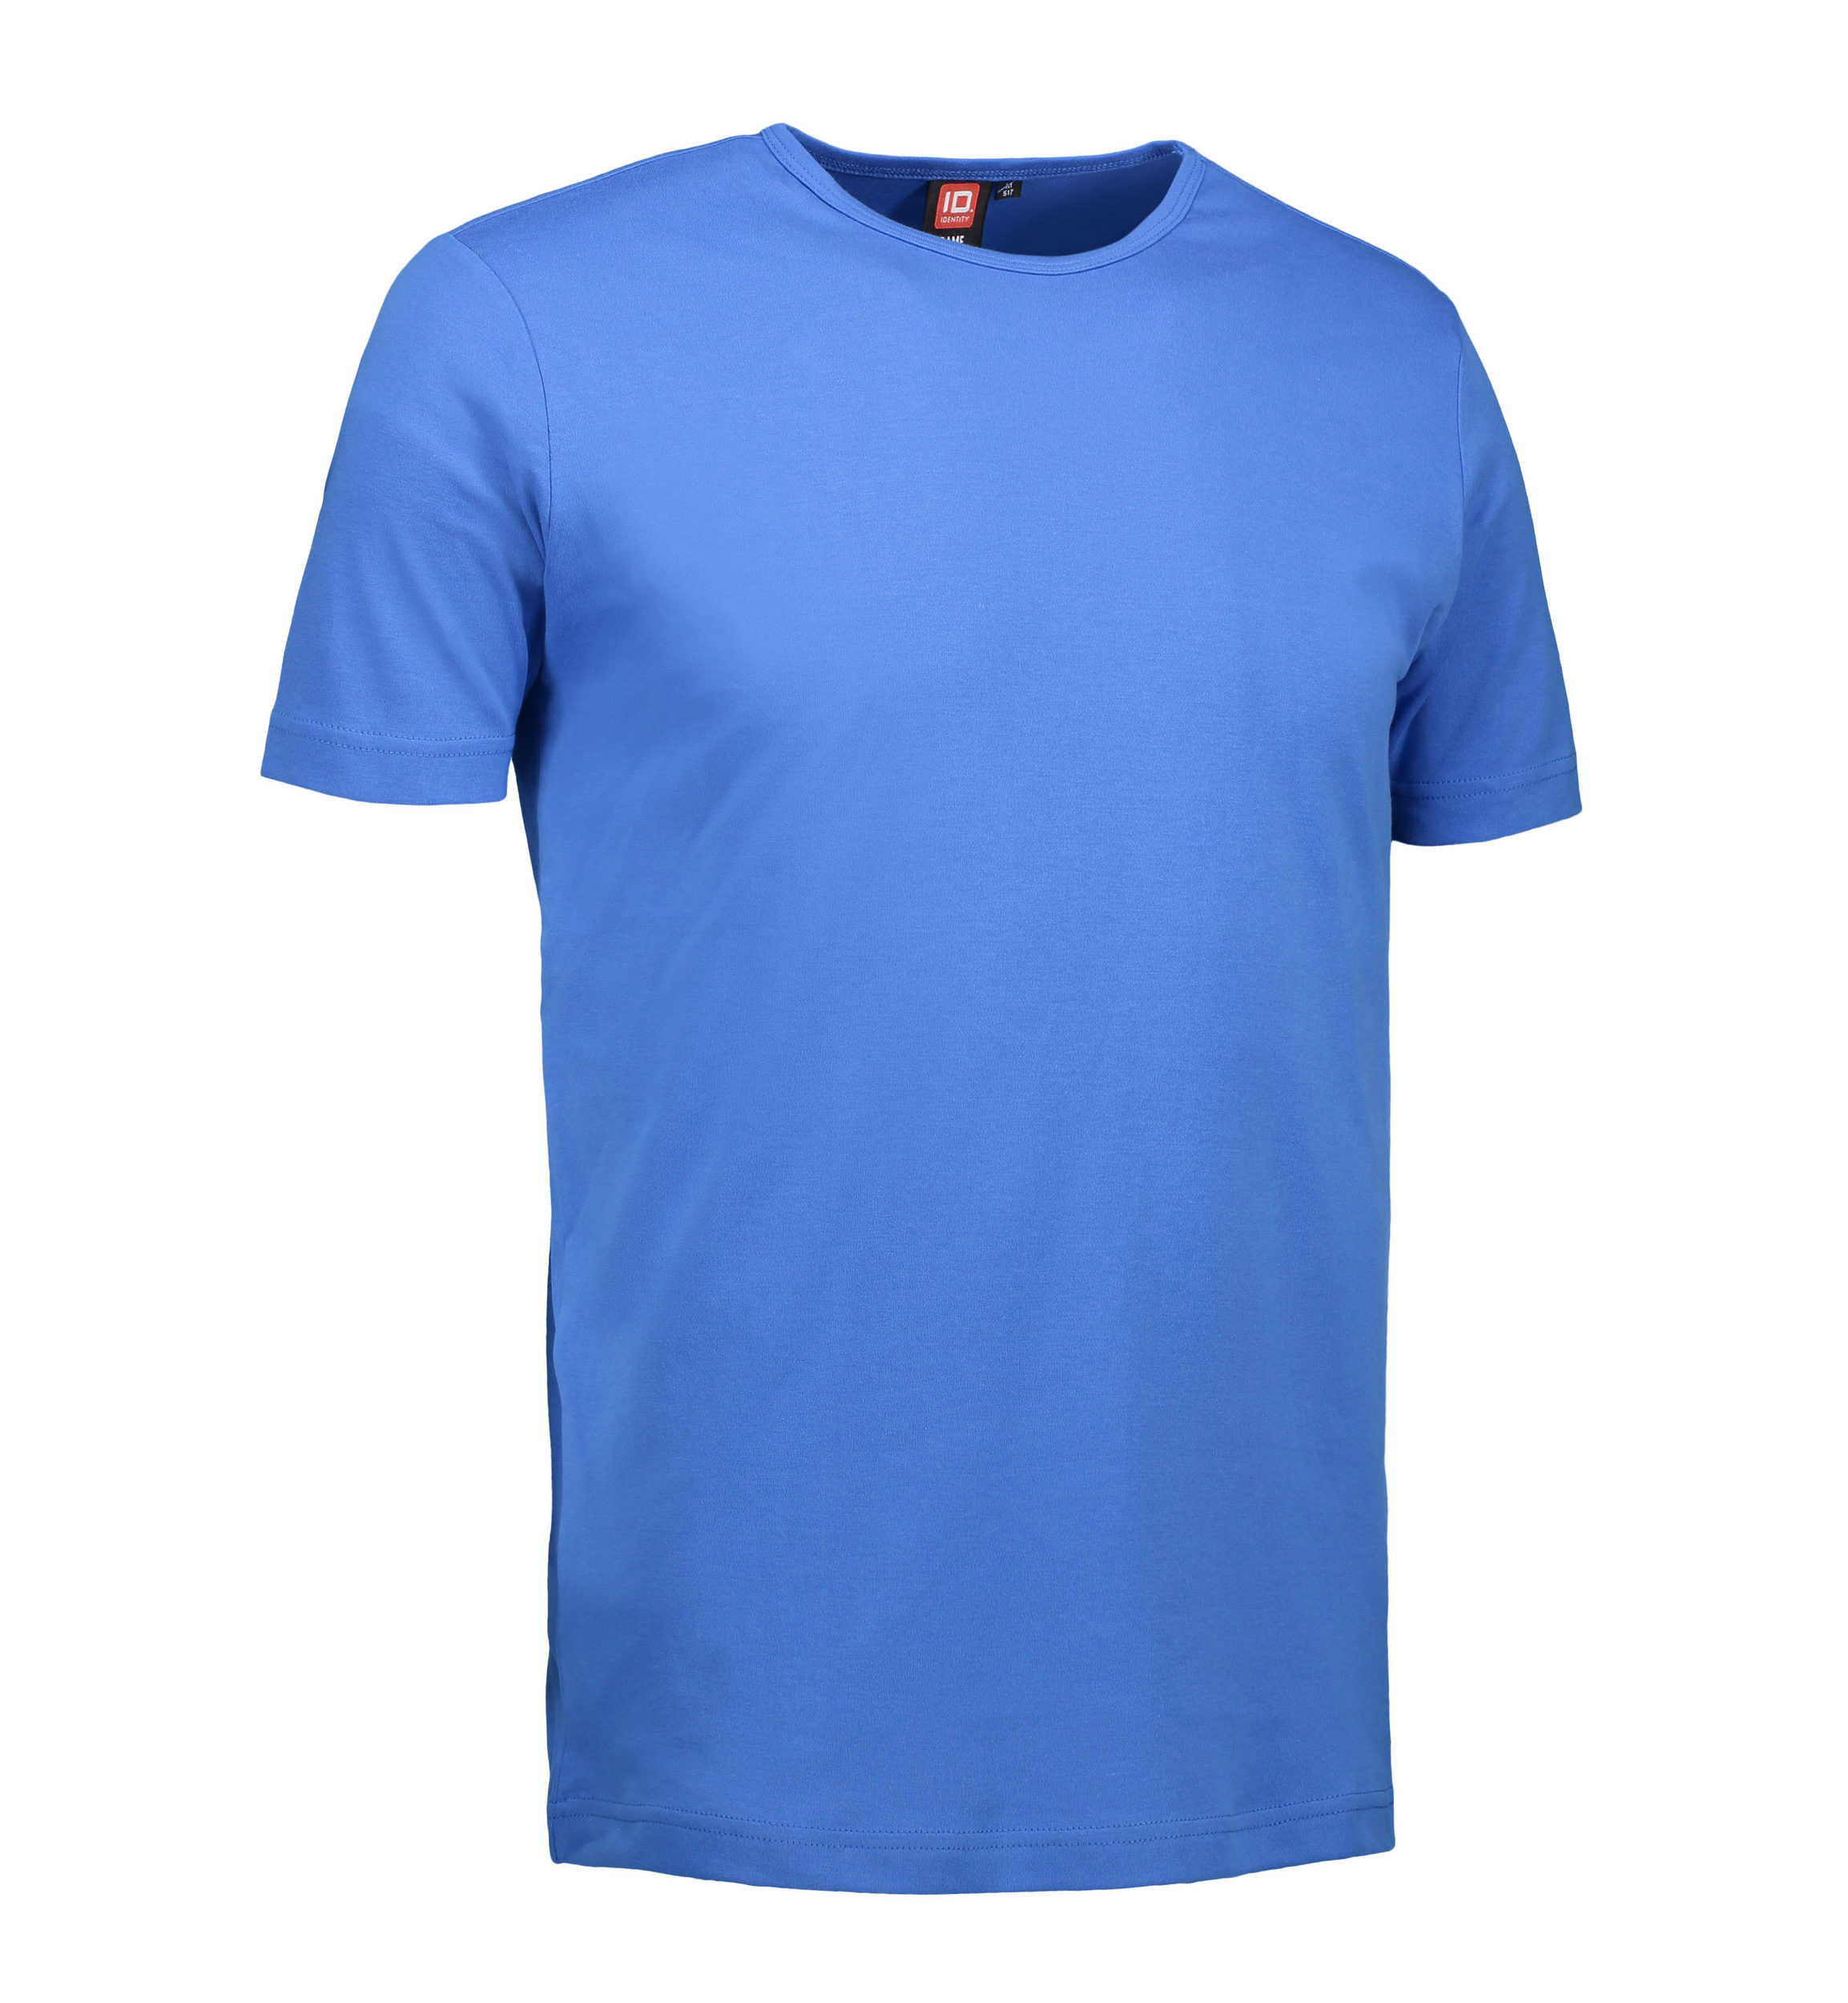 Billede af Blå t-shirt med rund hals til mænd - 2XL hos Sygeplejebutikken.dk